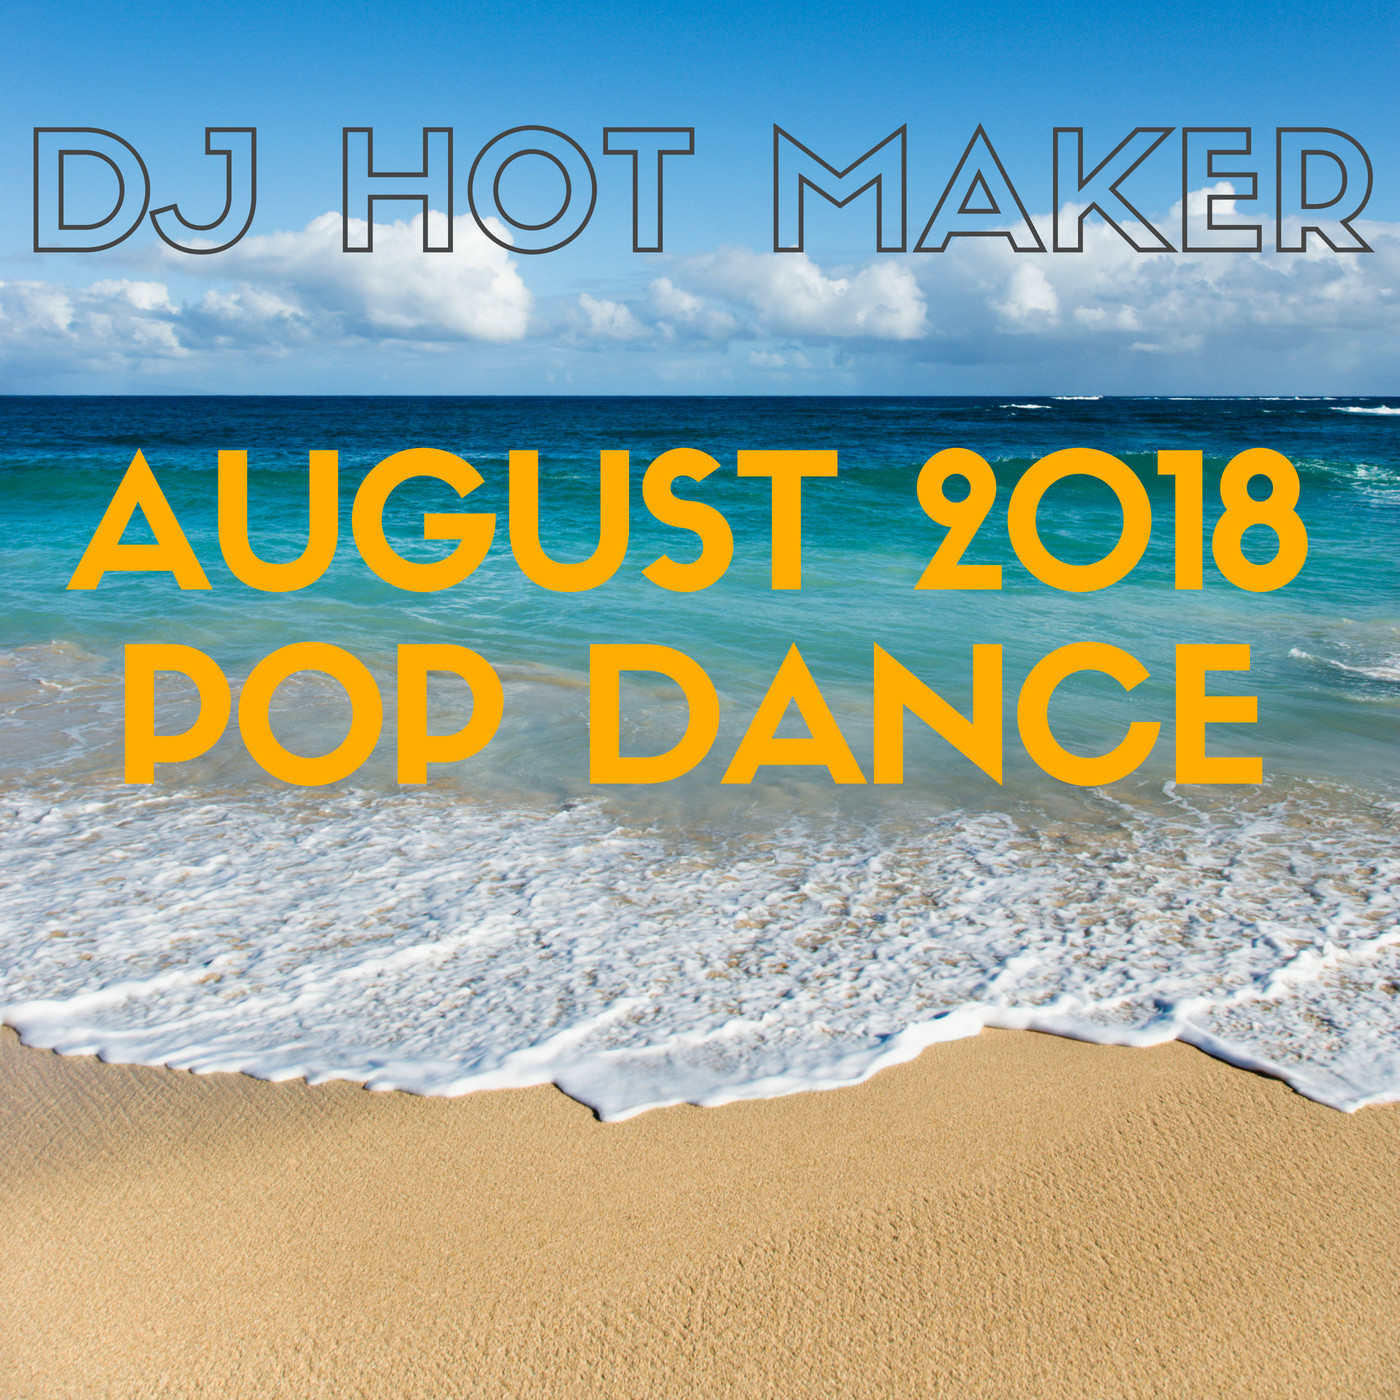 DJ Hot Maker - August 2018 Pop Dance Promo